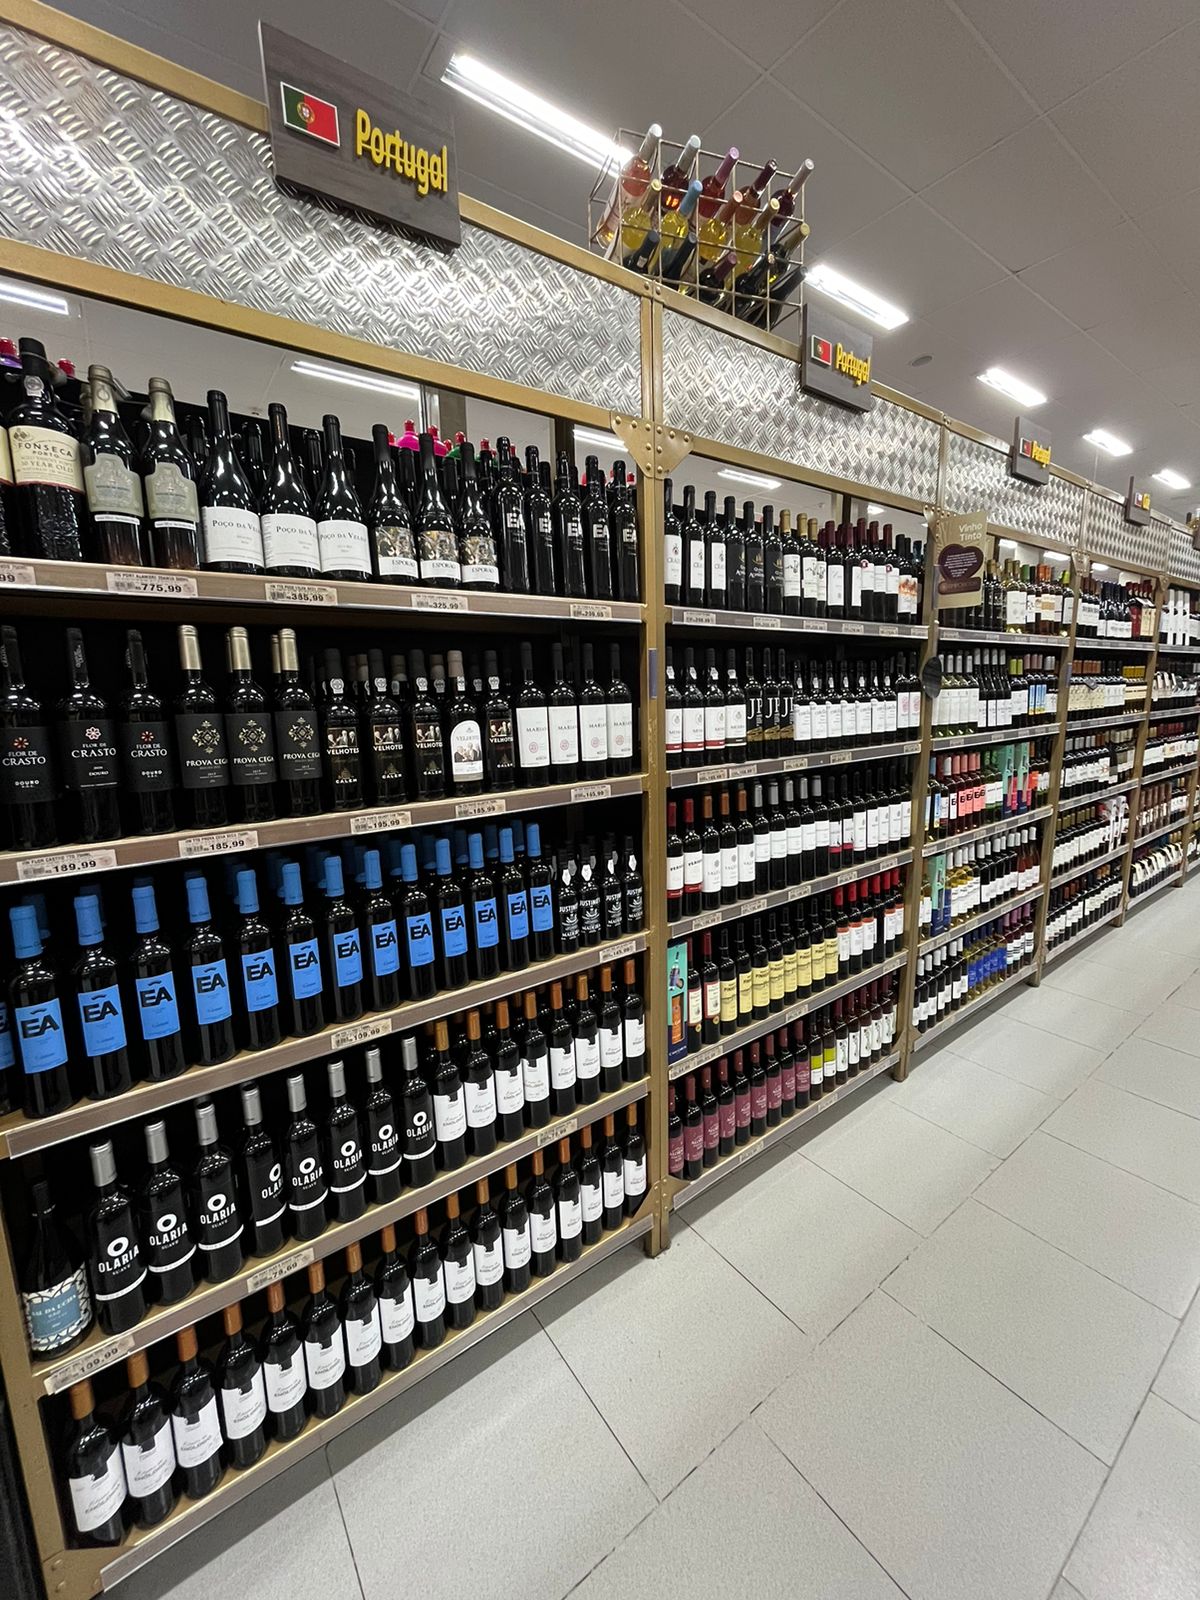 Vinhos e espumantes: Grupo DB faz promoção e vende rótulos nacionais e importados com descontos de até 50%